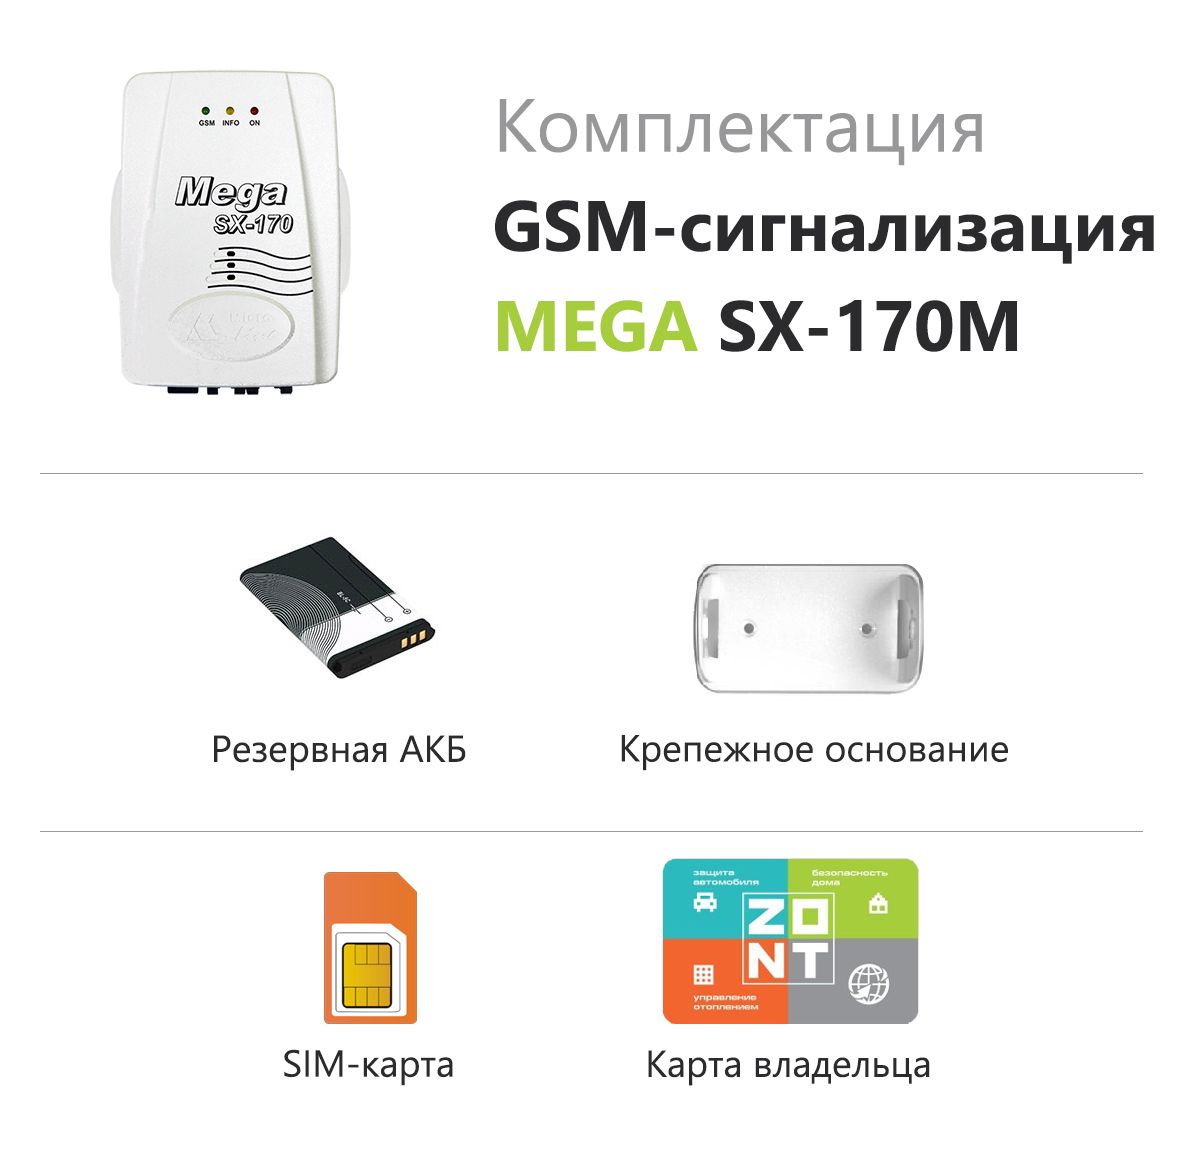 Gsm товары. GSM сигнализация Mega SX-170m. Охранная беспроводная GSM сигнализация Mega SX-170m. Симка для интернета. Сим карта для интернета.